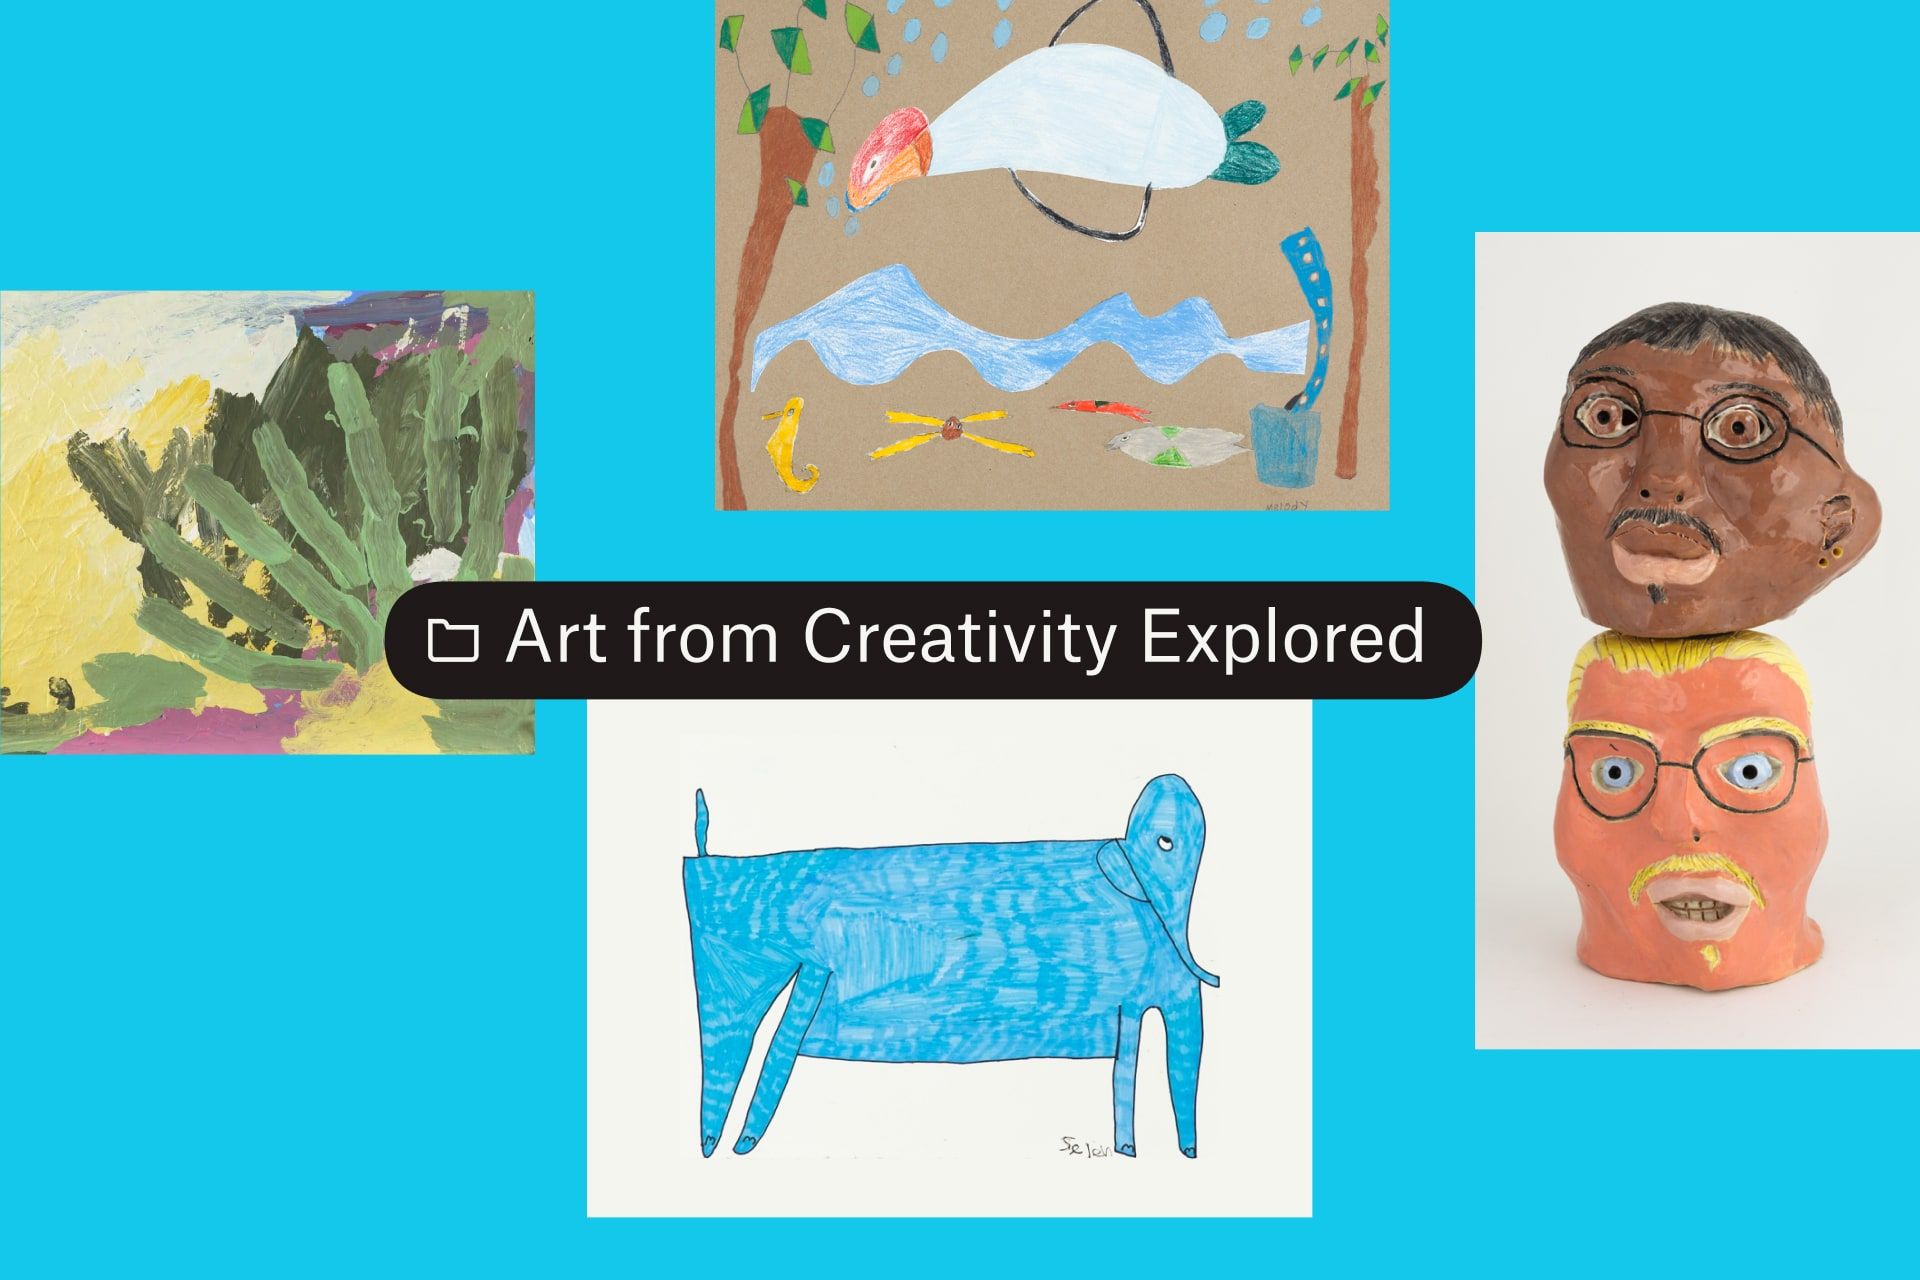 Een map met de titel Art from Creativity Explored met daarop vier afbeeldingen van kunst